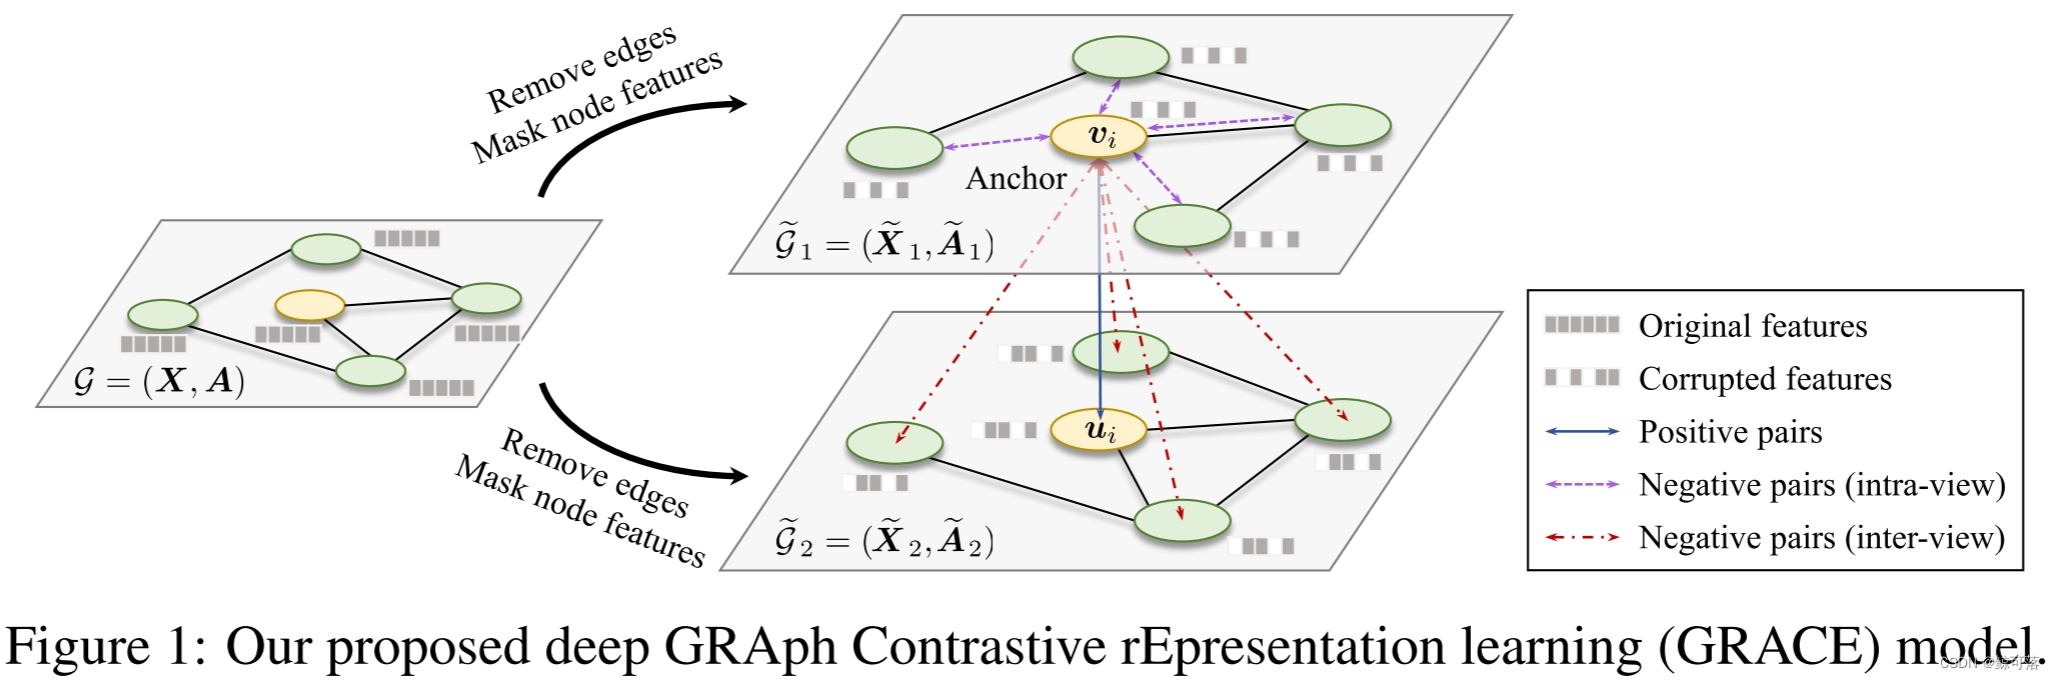 【论文阅读】Deep Graph Contrastive Representation Learning